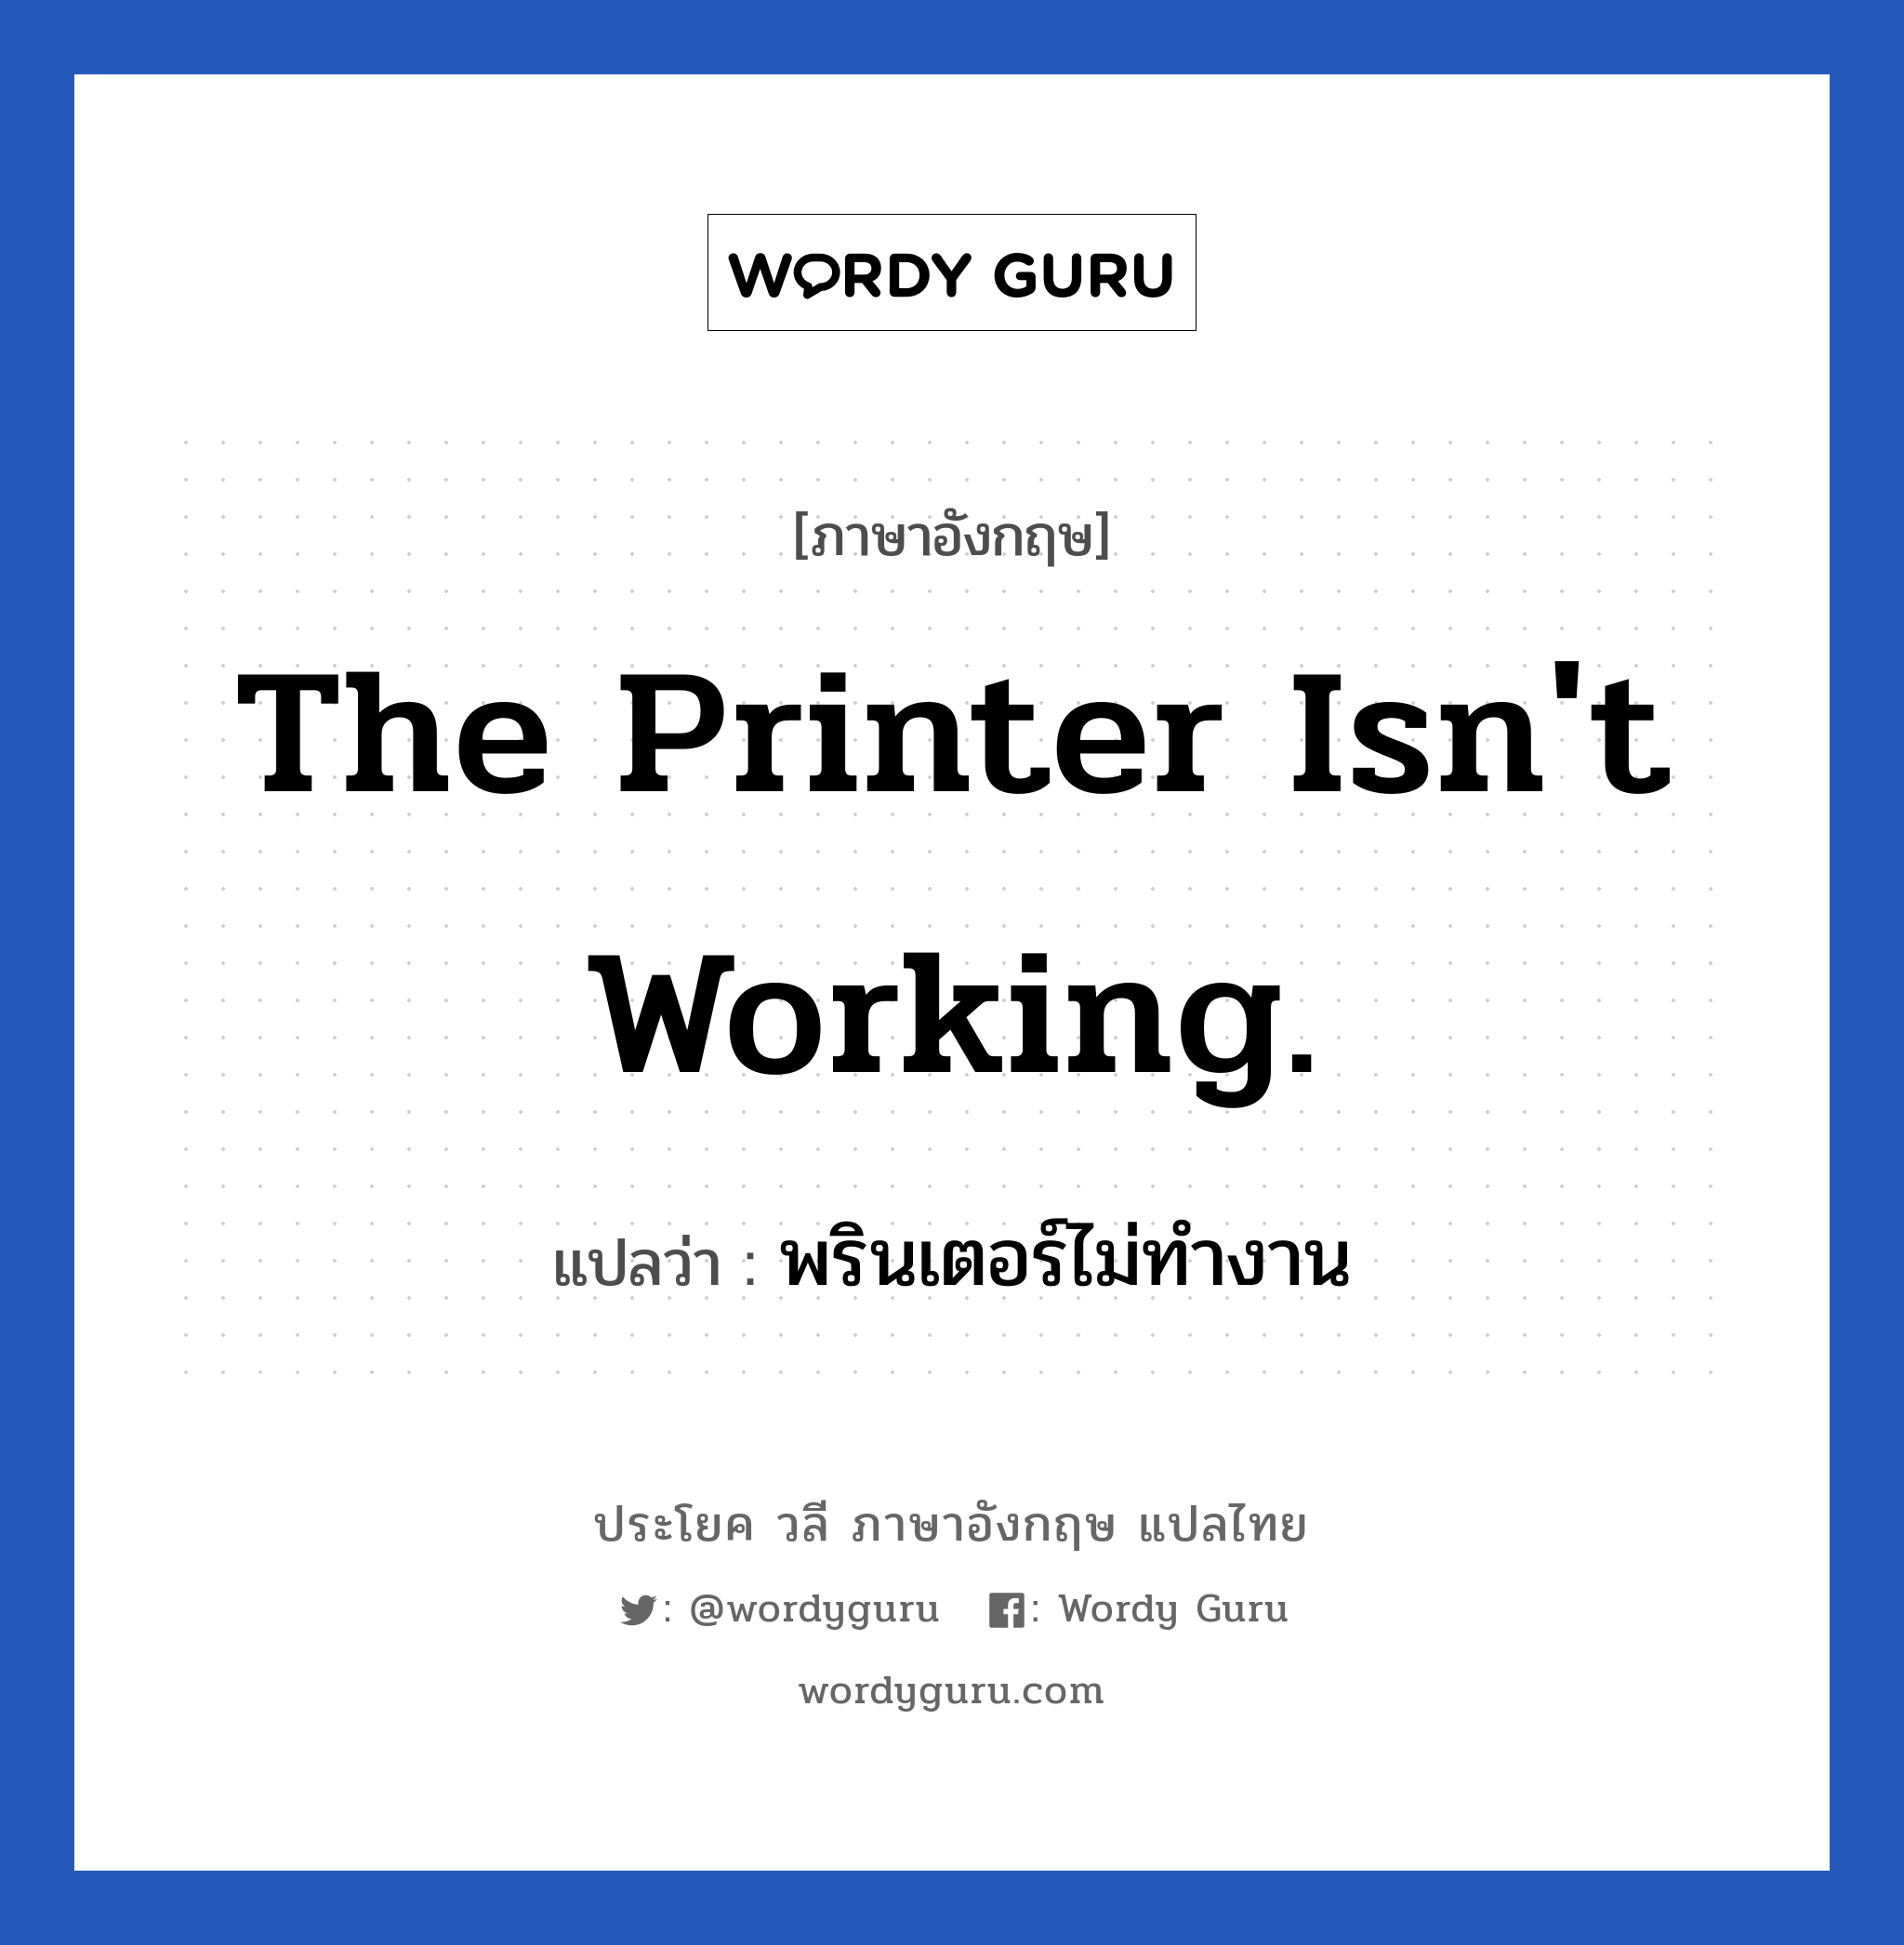 พรินเตอร์ไม่ทำงาน ภาษาอังกฤษ?, วลีภาษาอังกฤษ พรินเตอร์ไม่ทำงาน แปลว่า The printer isn't working.